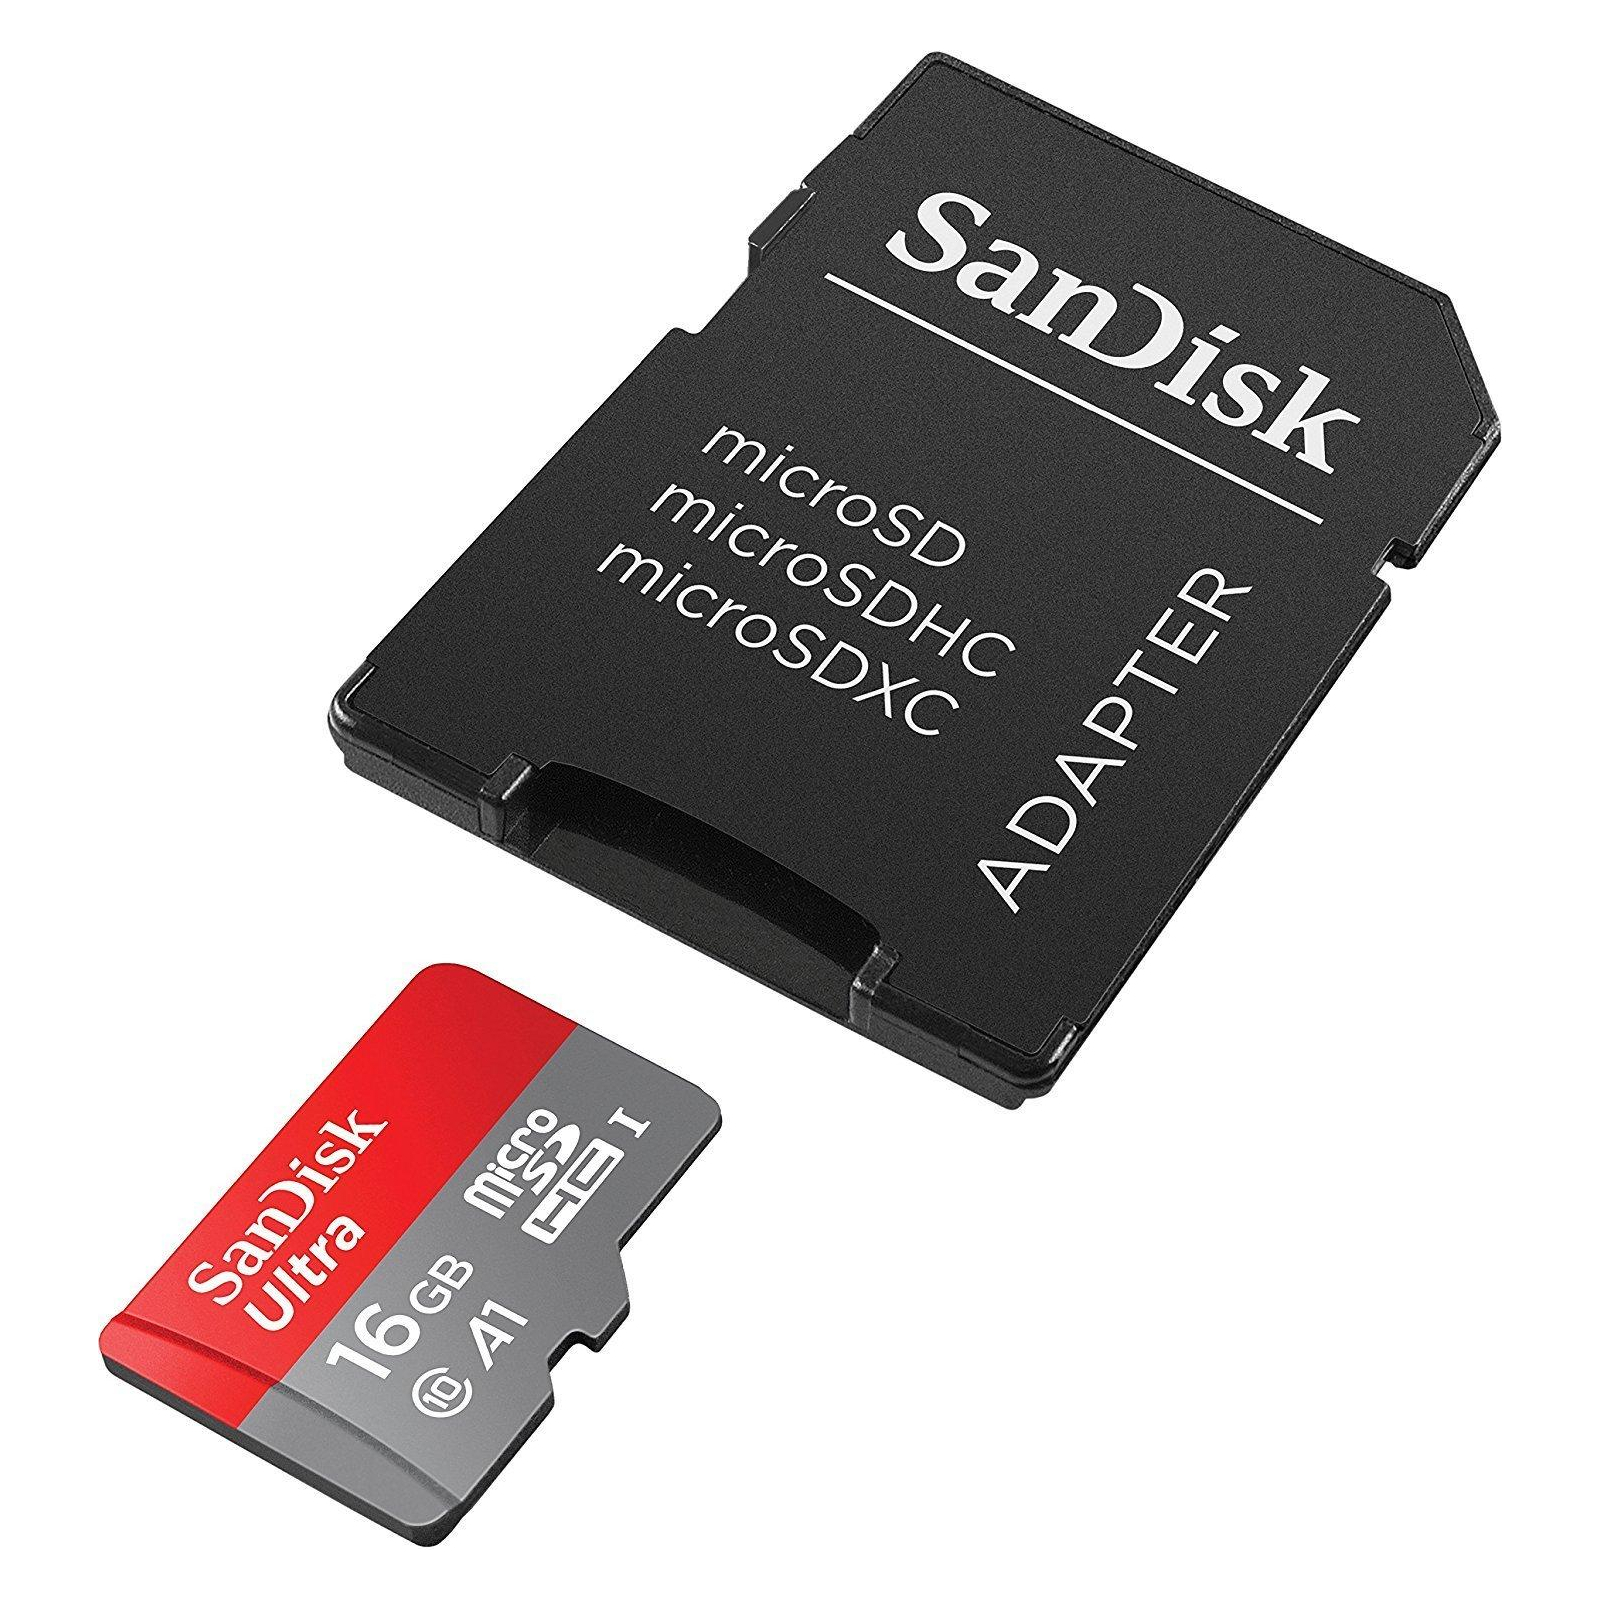 Карта памяти SanDisk 16GB microSDHC class 10 UHS-I A1 Ultra (SDSQUAR-016G-GN6TA) изображение 4